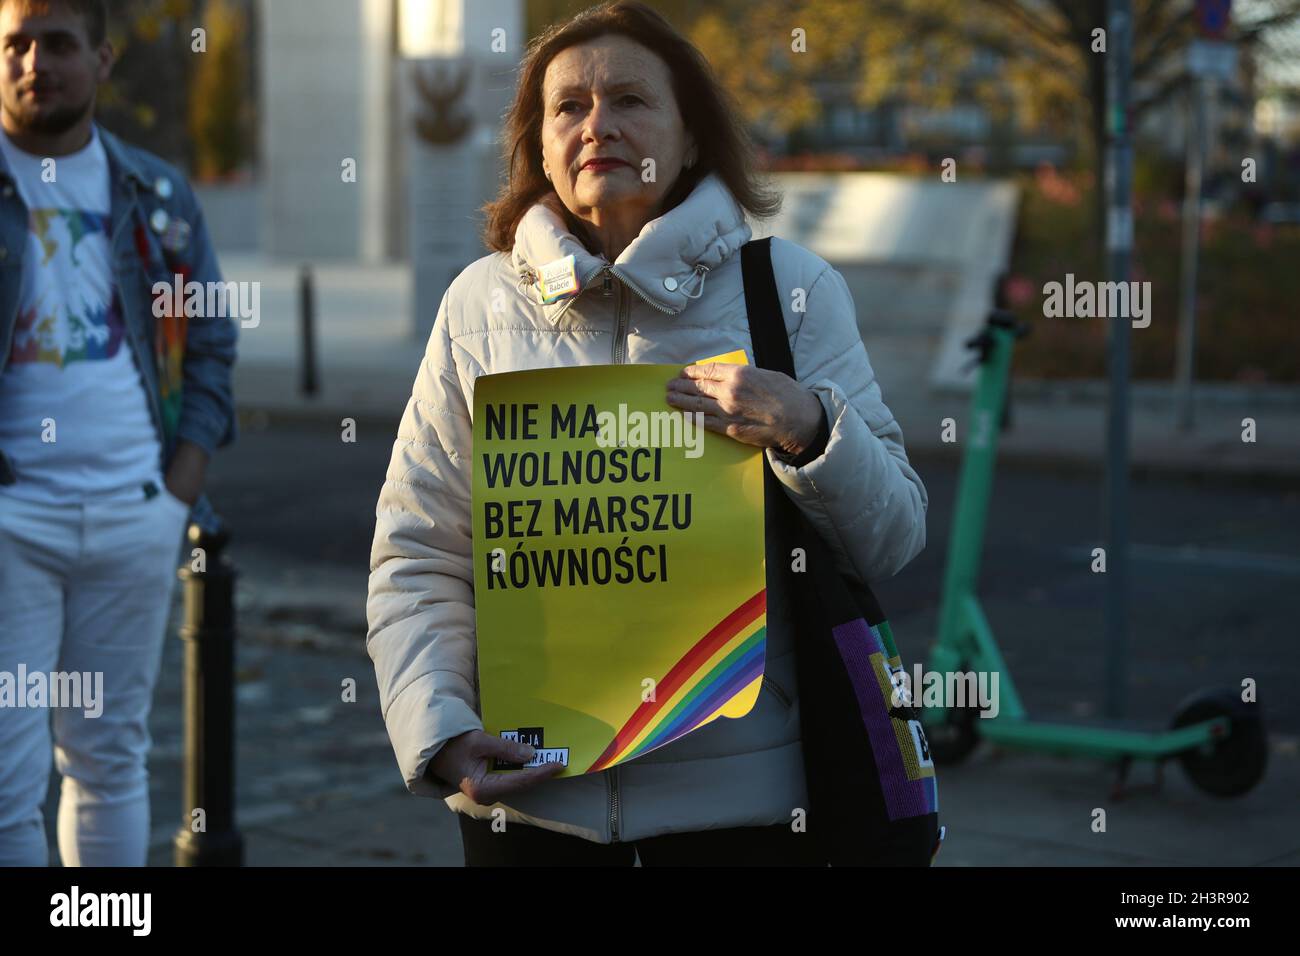 Diverse dozzine di persone si sono riunite di fronte al parlamento il 29 ottobre 2021 per protestare contro una proposta di legge che proibirebbe le marce della parità. Il disegno di legge, introdotto dal conservatore attivista anti-aborto Kaja Godek, teme che una legge sarà approvata, vietando completamente le marce gay di orgoglio, note come marce di uguaglianza in Polonia. La Polonia è stata nominata come il paese peggiore in cui le persone LGBT vivono nell'Unione europea, con diverse regioni che si sono dichiarate "libere dall'ideologia LGBT”. Il clima anti-LGBT nel paese ha visto molte persone LGBT cercare rifugio nei paesi vicini. (Foto di Jaap Arrien Foto Stock